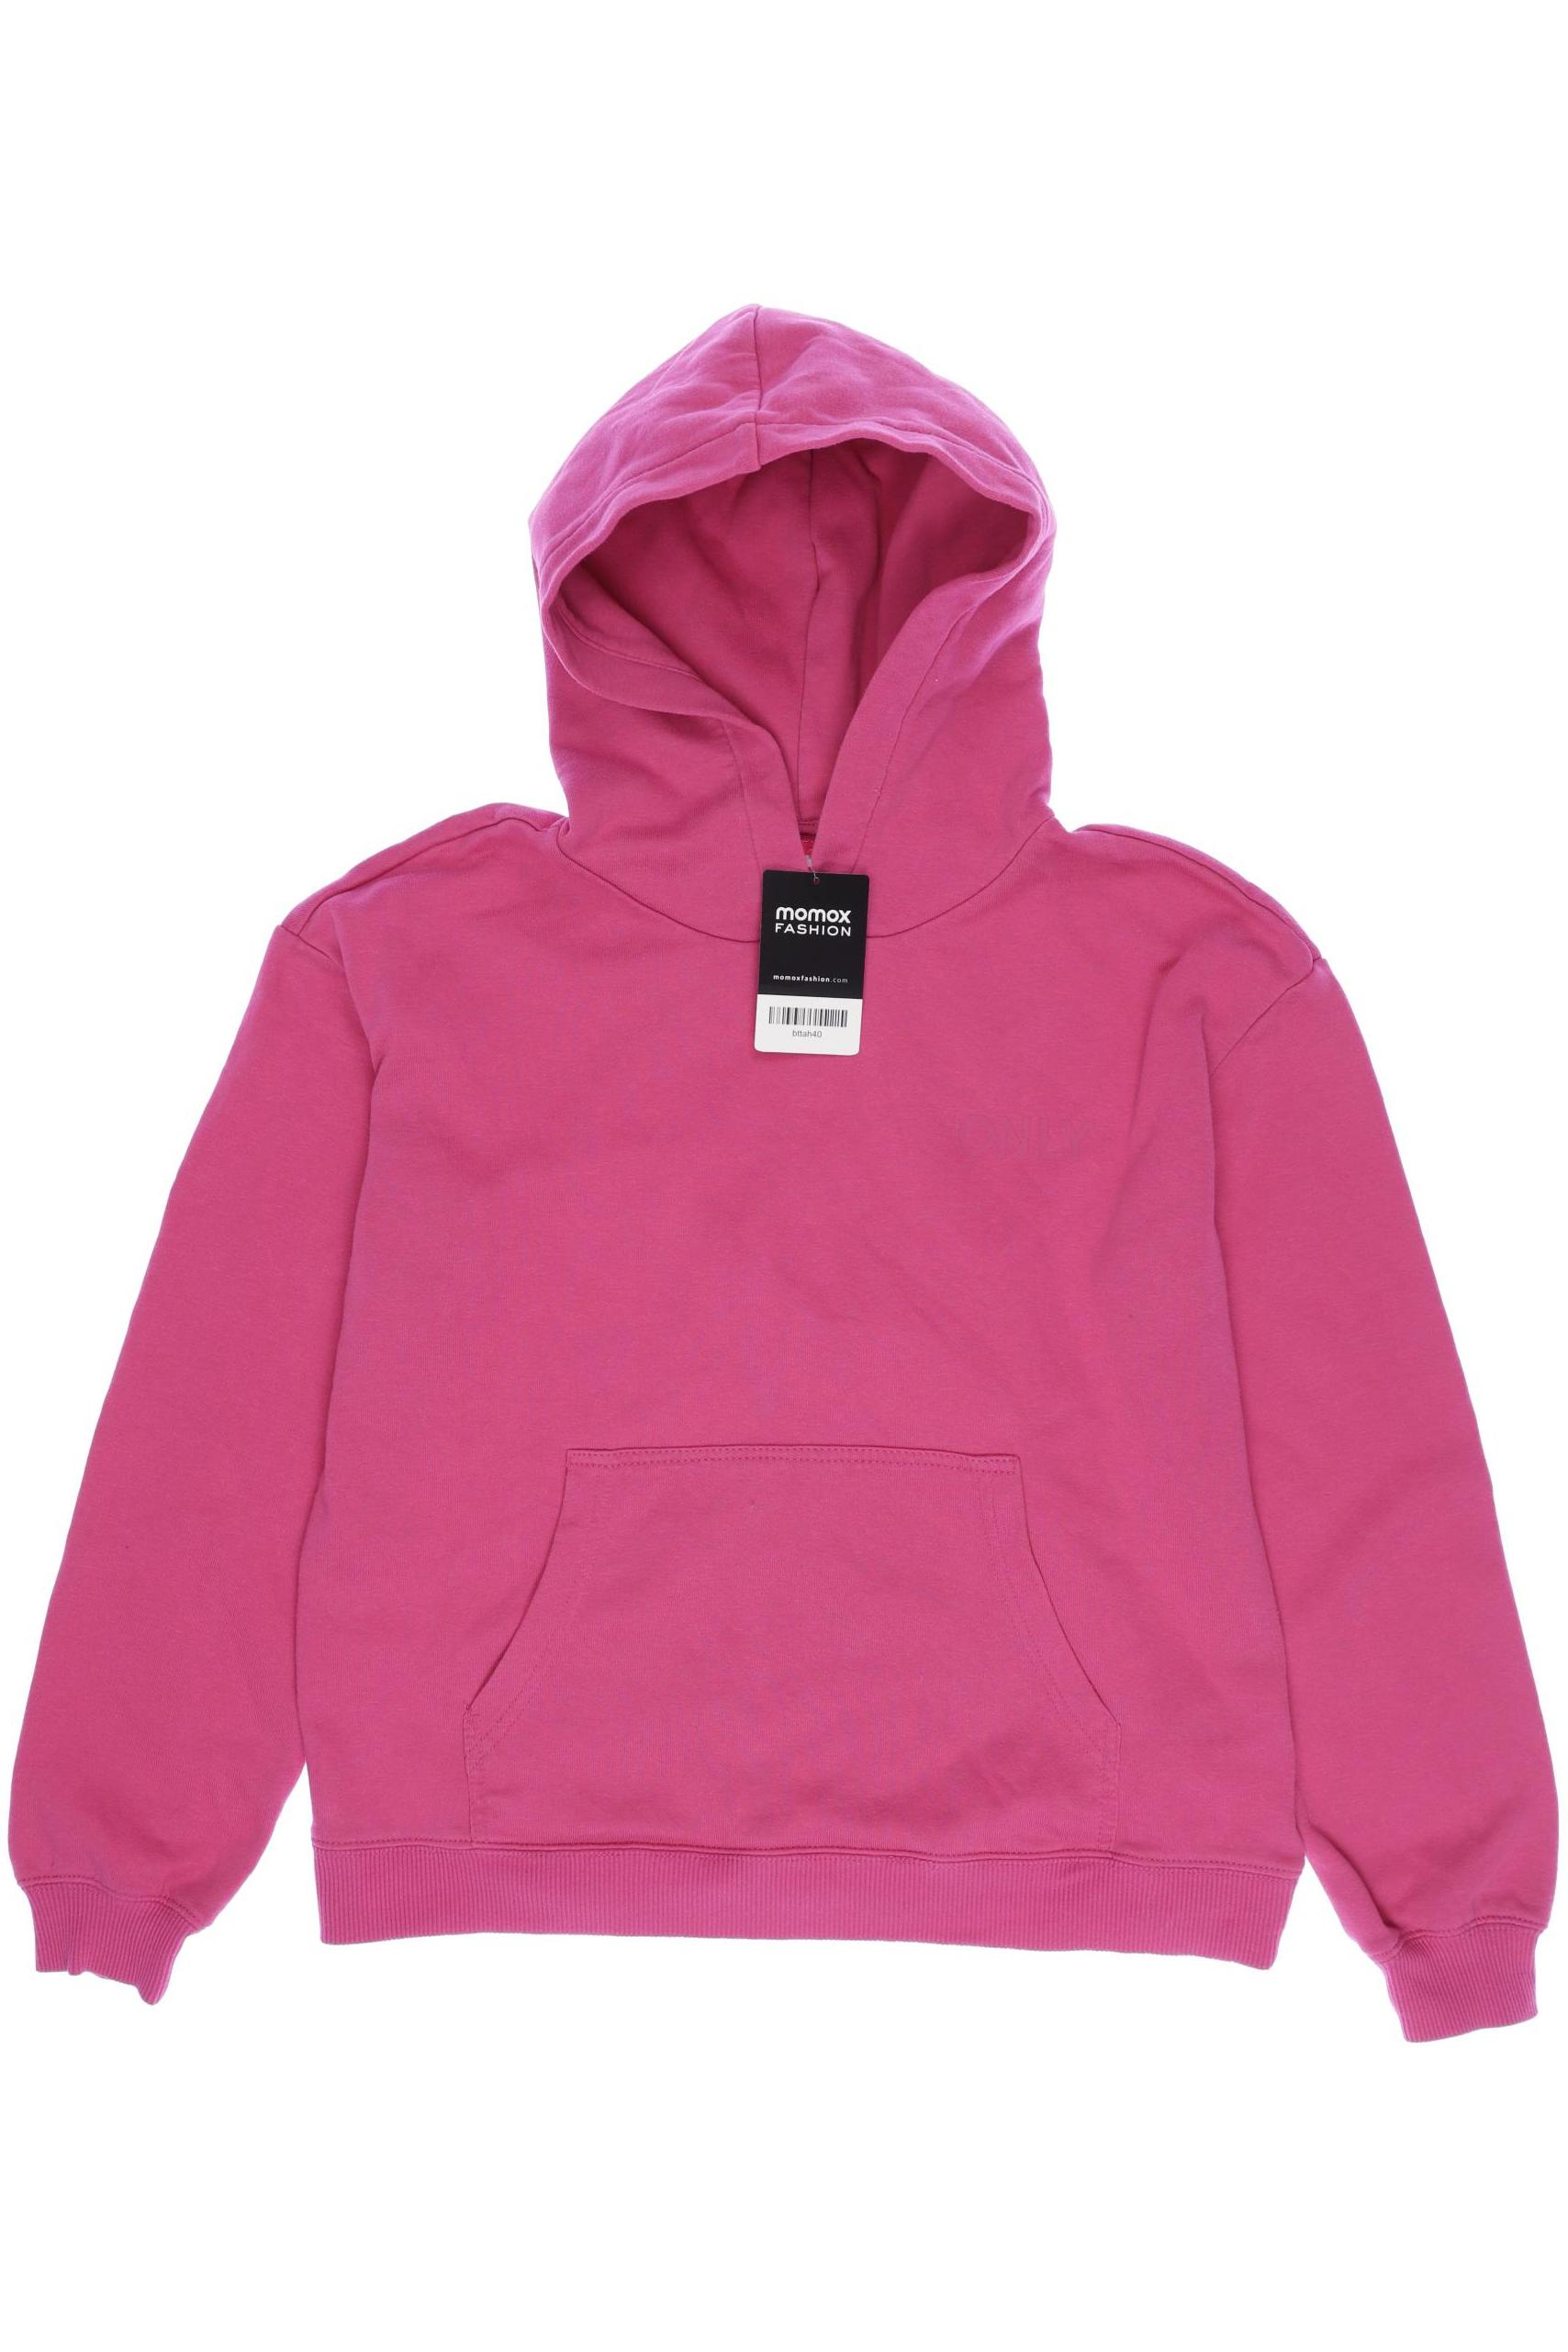 Only Damen Hoodies & Sweater, pink, Gr. 164 von Only